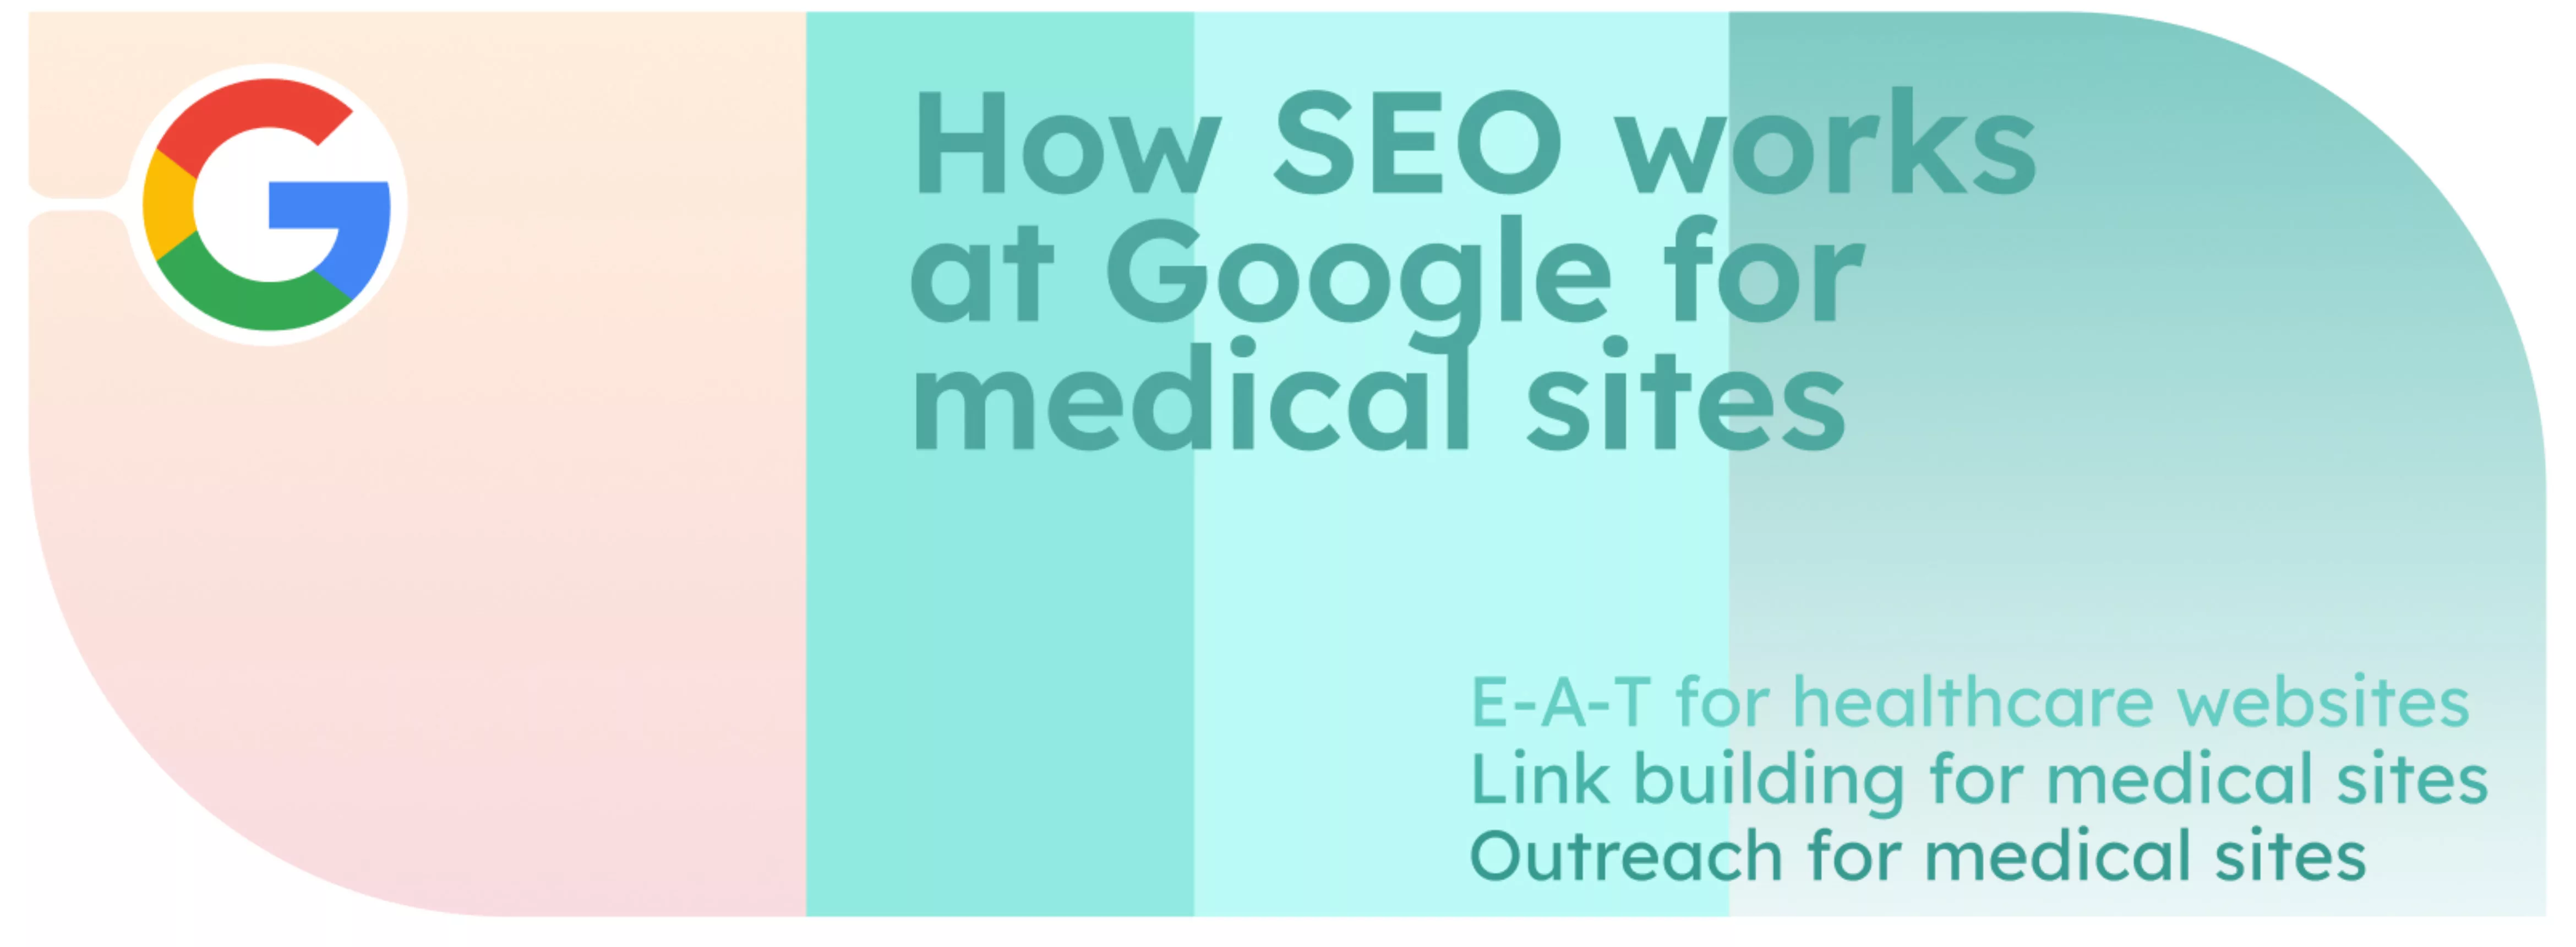 Como funciona a SEO no Google para sítios médicos